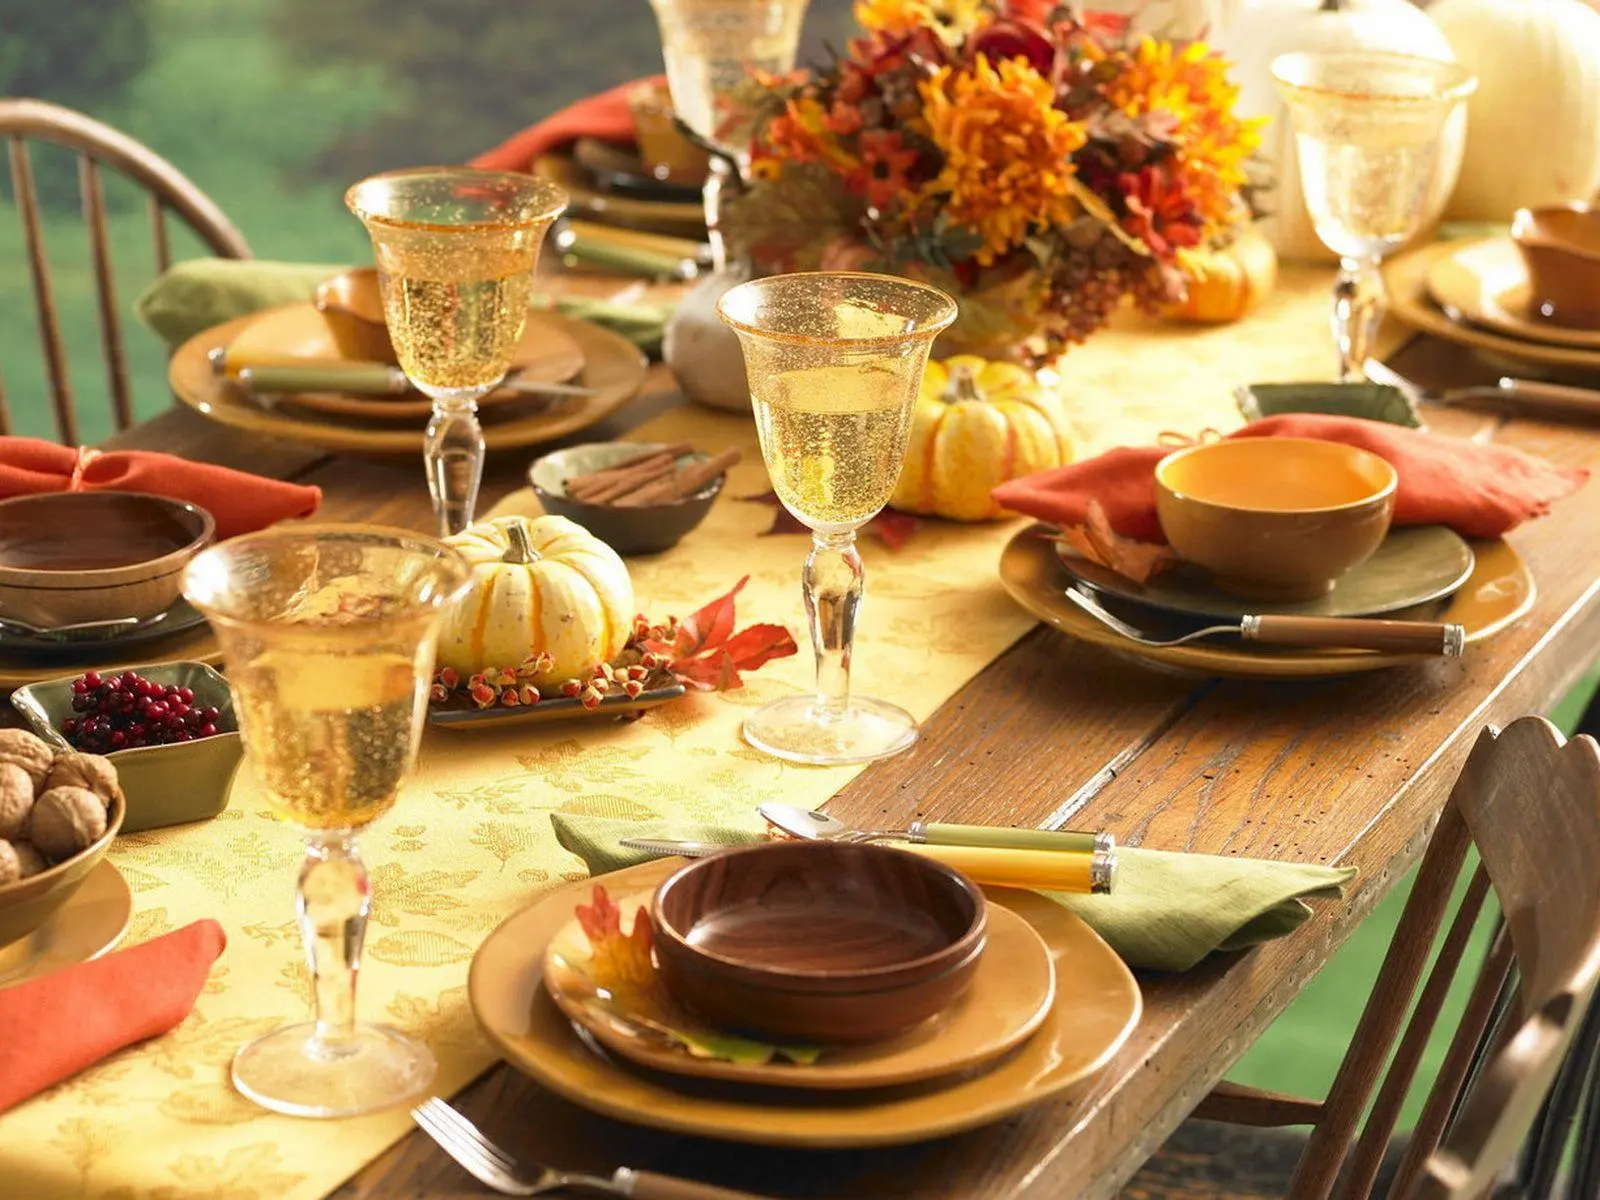 میز ناهار خوری که افتاب در آن تابیده است و بقشاب لیوان و قاشق ها نیز در روی میز چیده شده است